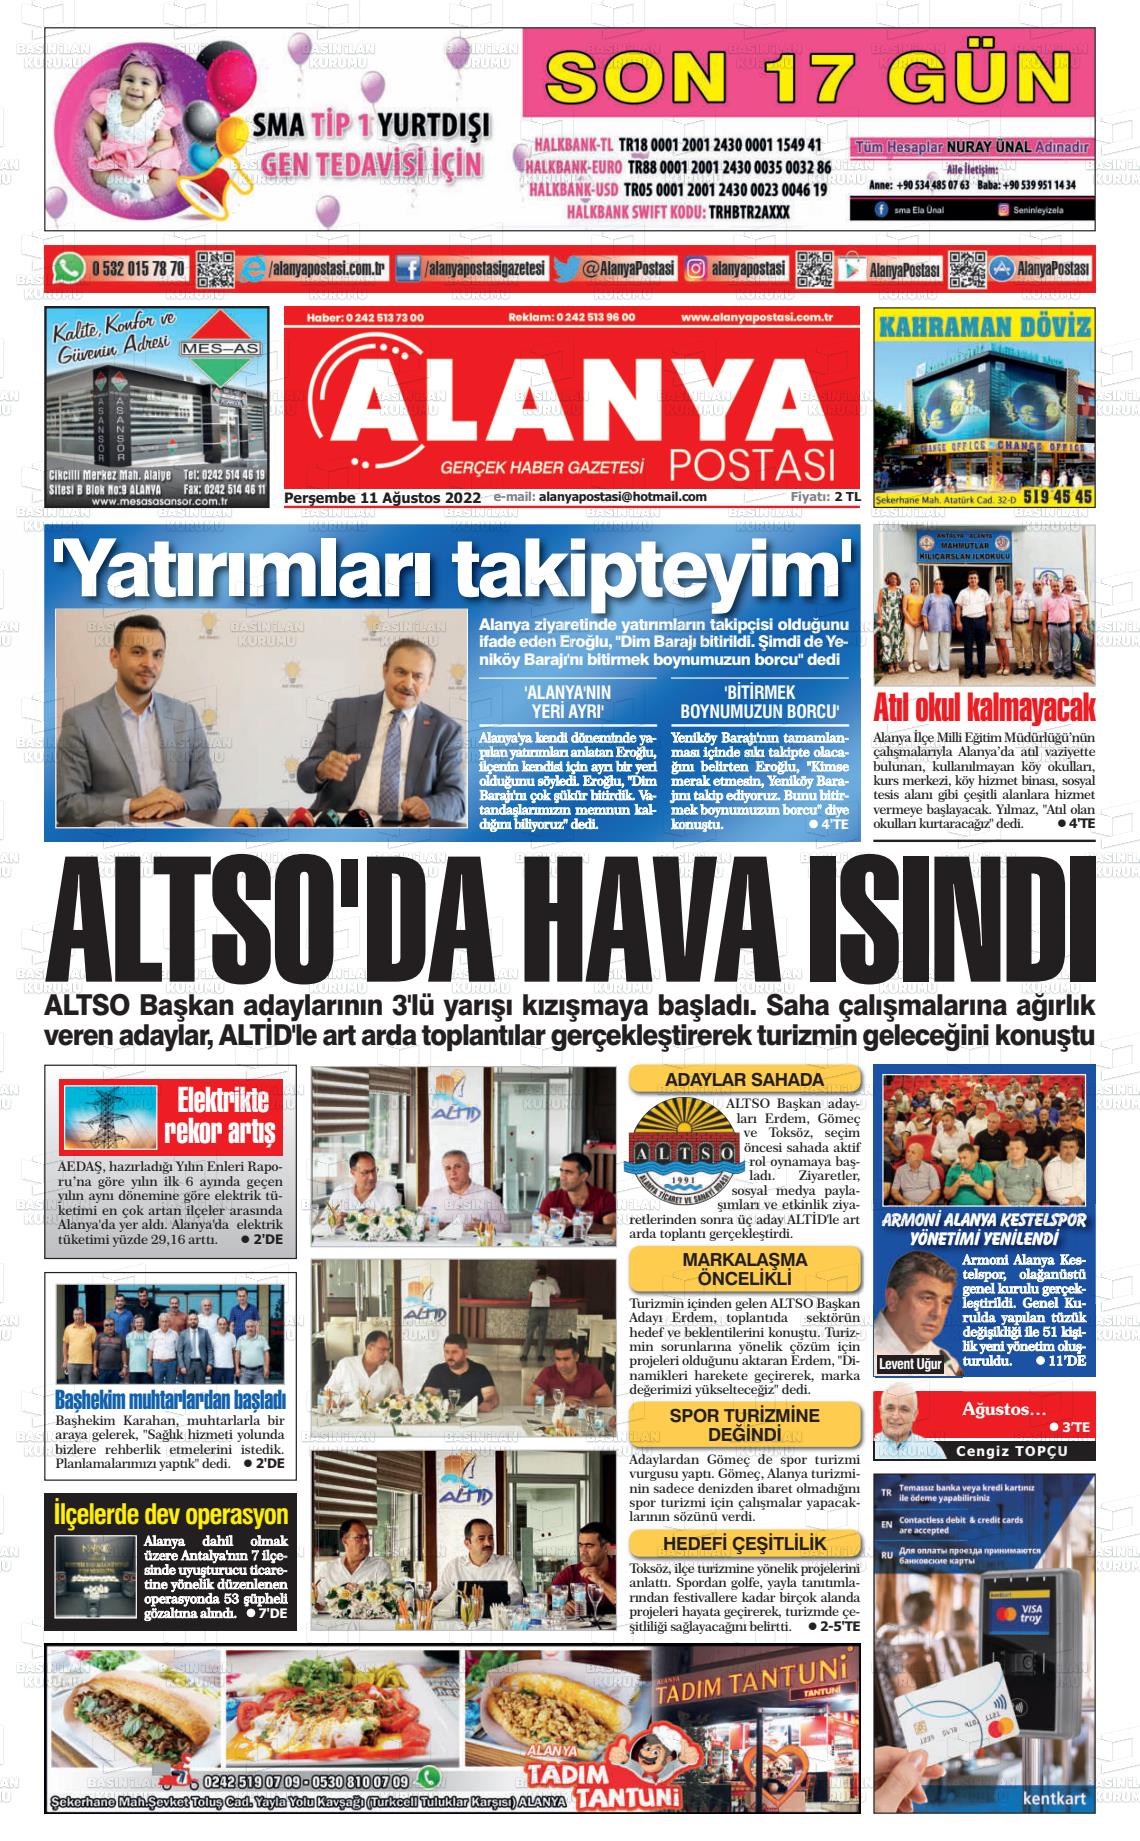 11 Ağustos 2022 Alanya Postası Gazete Manşeti